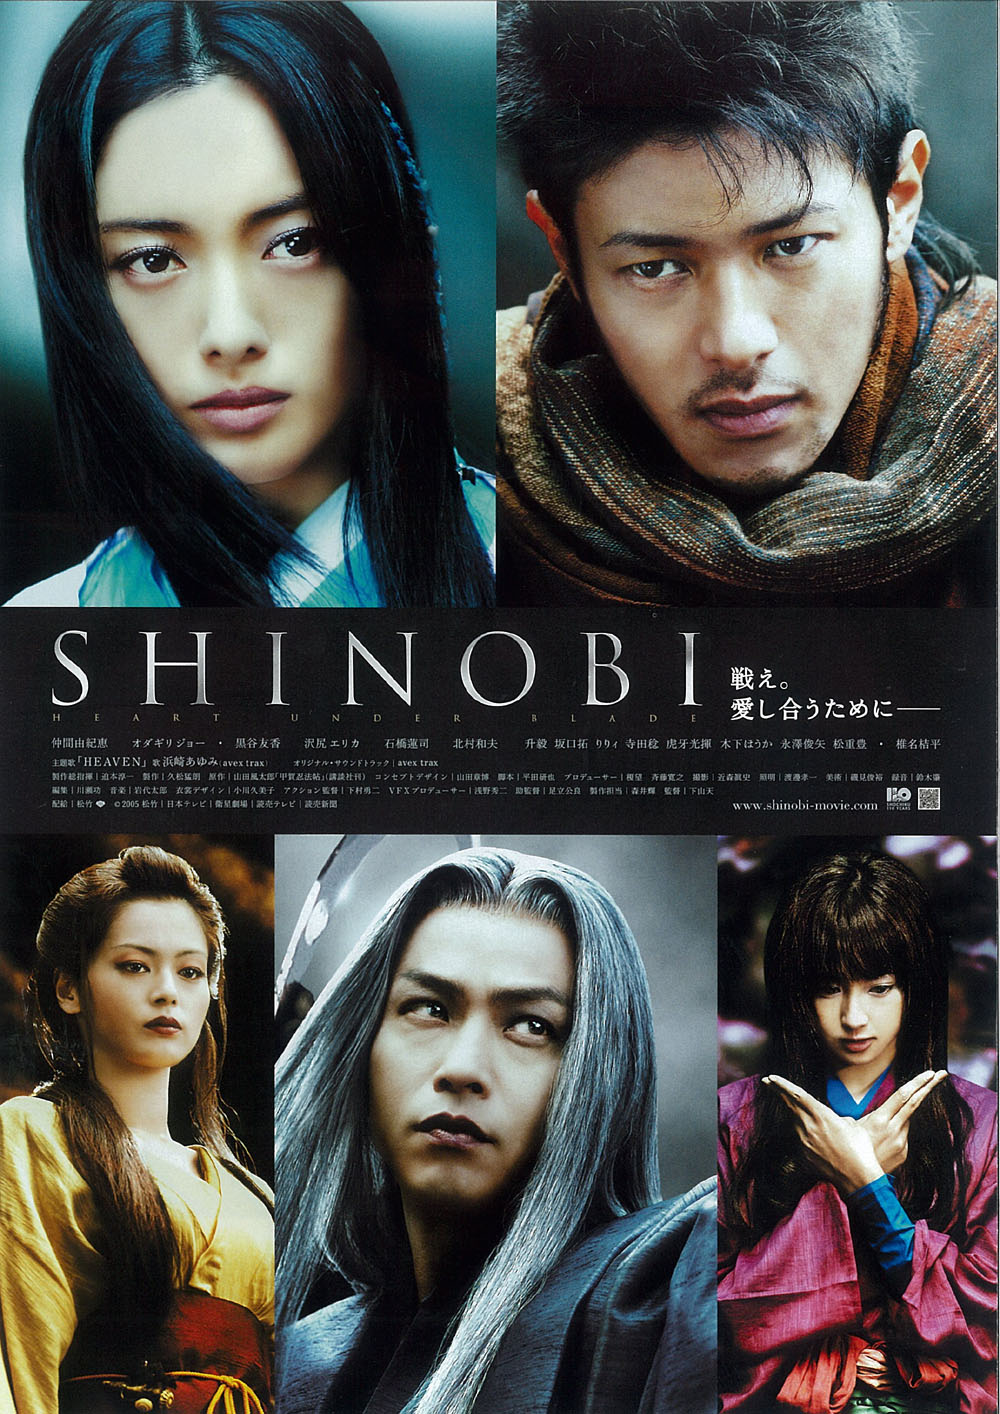 Shinobi heart under blade movie